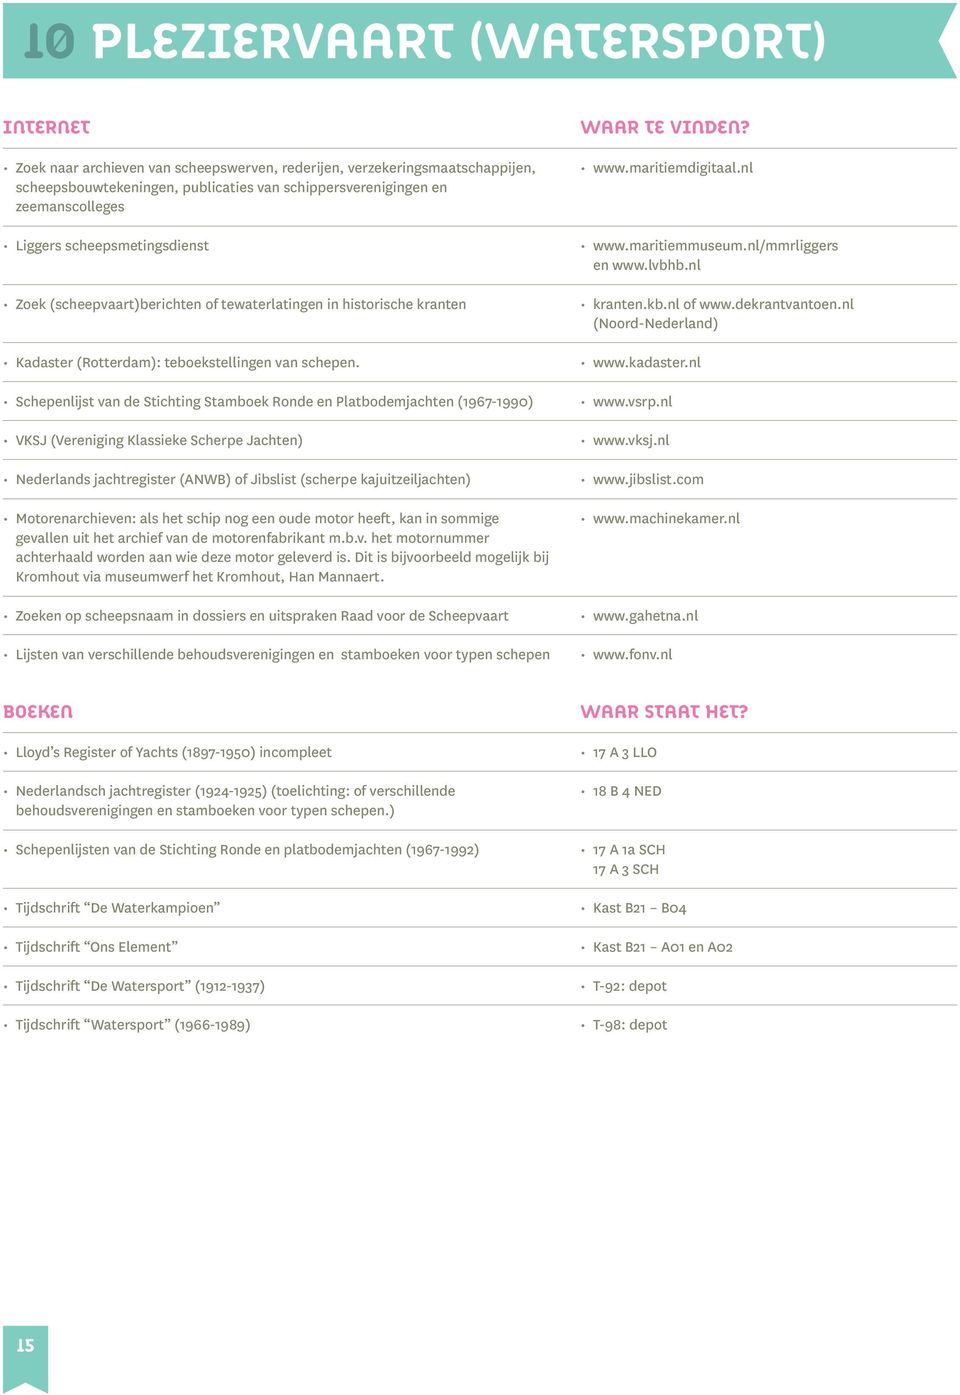 Schepenlijst van de Stichting Stamboek Ronde en Platbodemjachten (1967-1990) VKSJ (Vereniging Klassieke Scherpe Jachten) Nederlands jachtregister (ANWB) of Jibslist (scherpe kajuitzeiljachten)